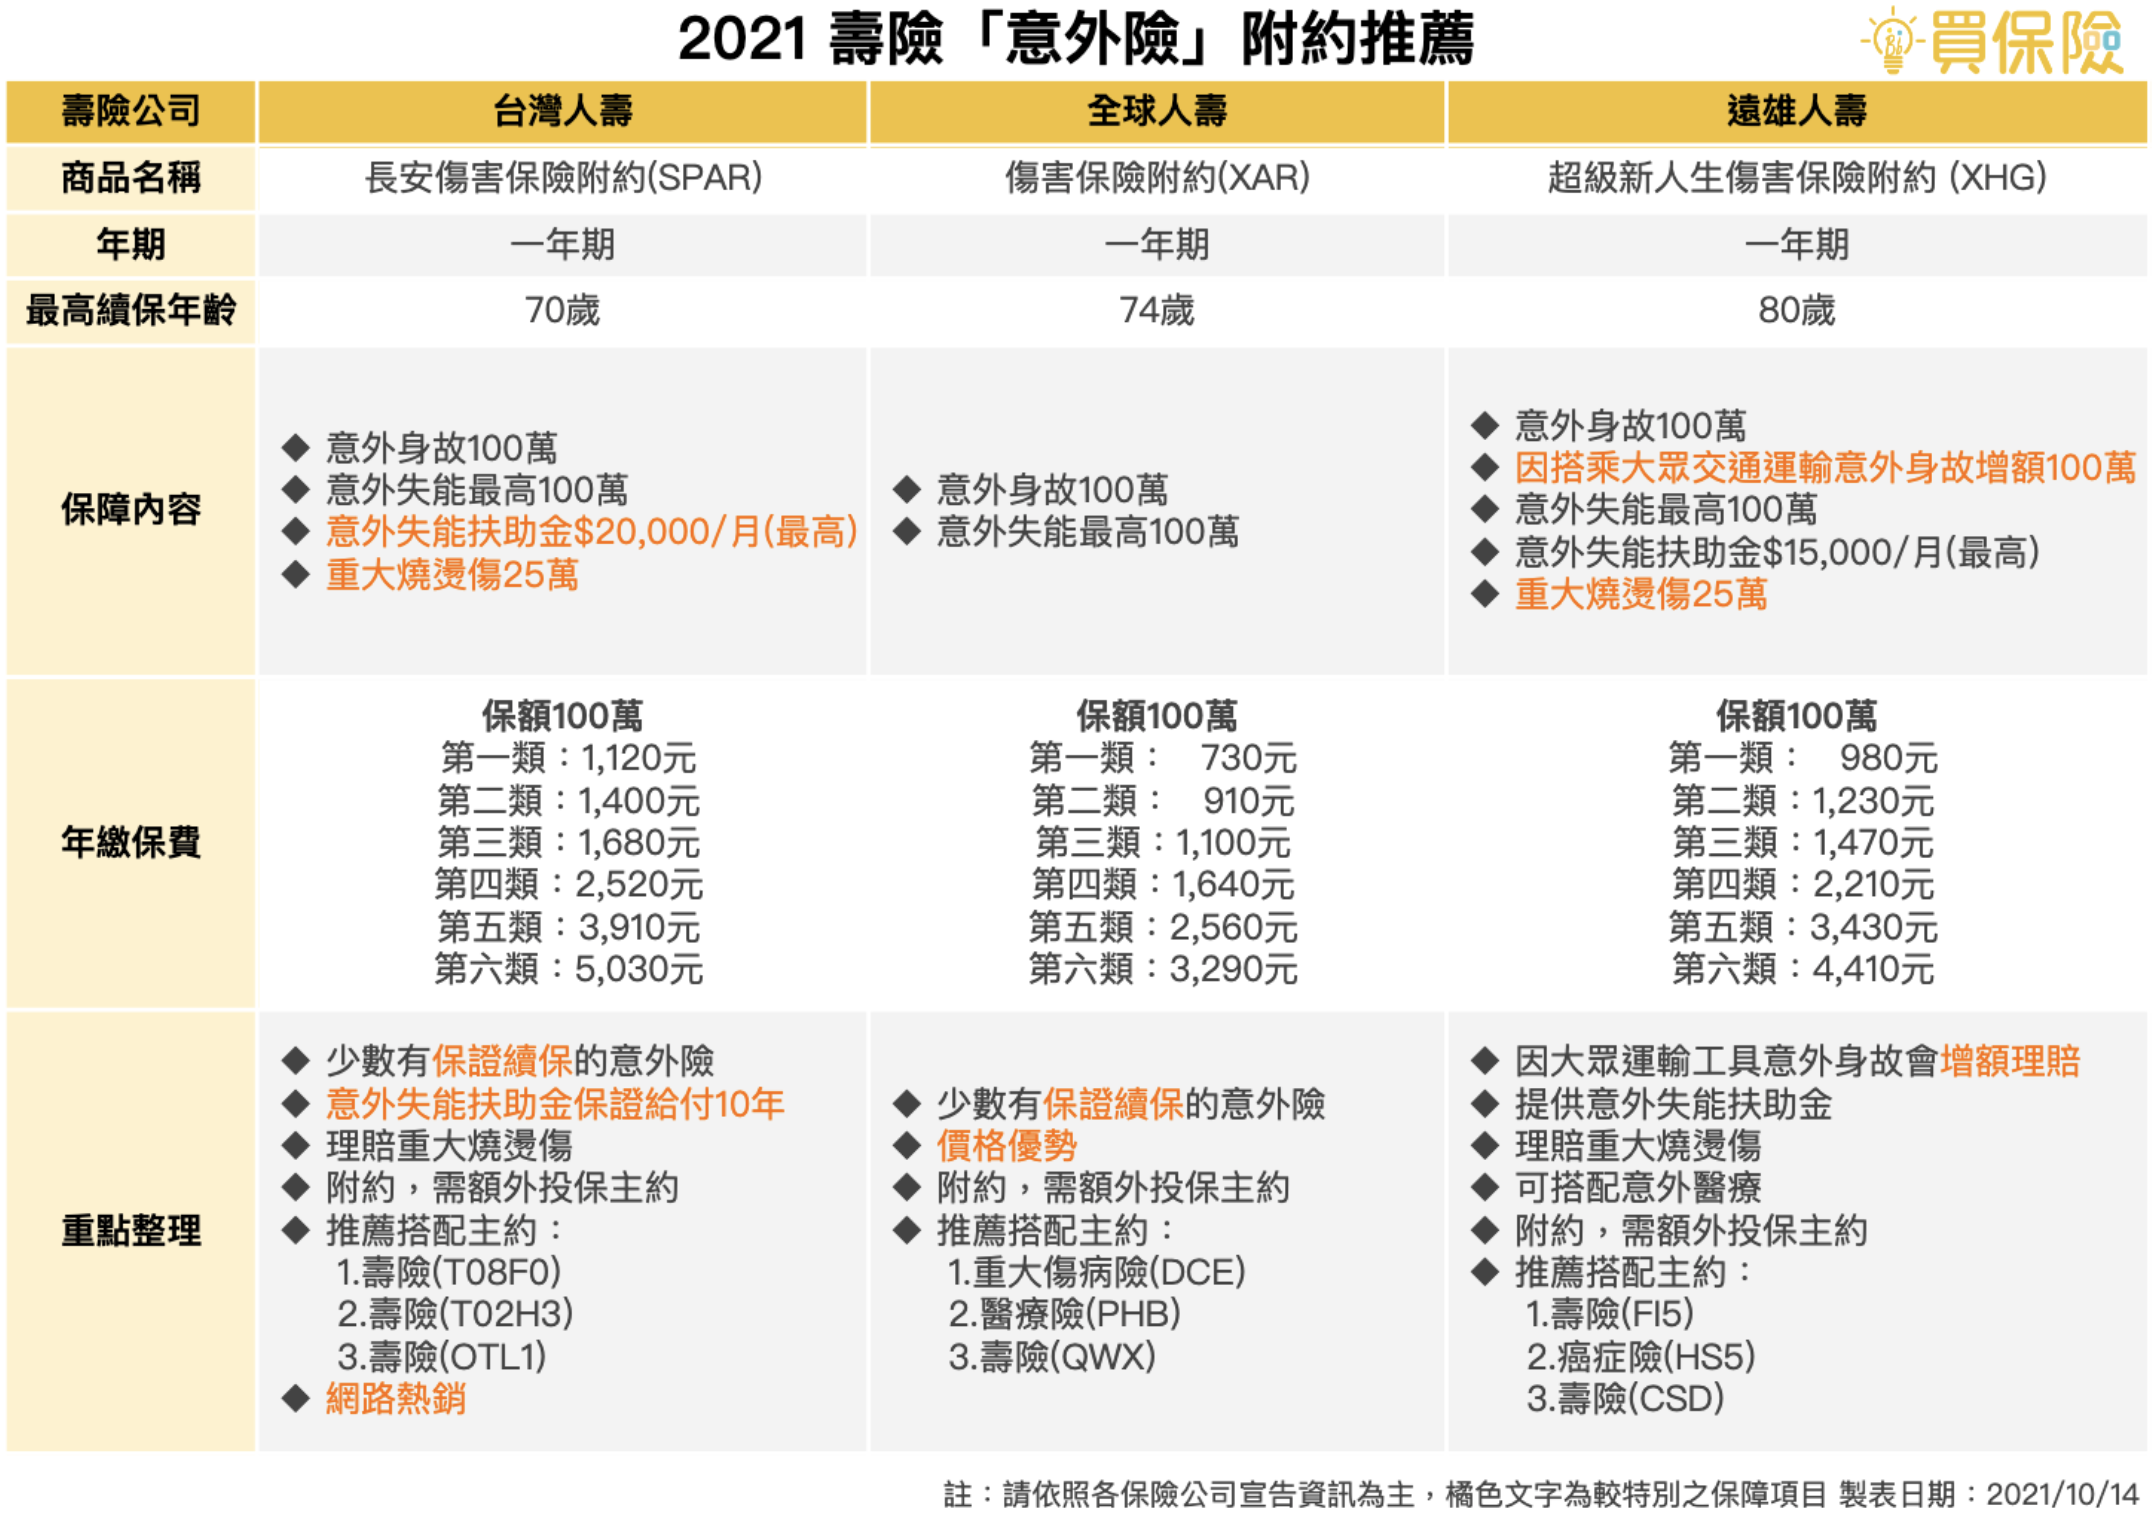 2021熱門壽險公司熱門意外險一年期附約推薦 台灣人壽SPAR 全球人壽XAR 遠雄人壽XHG  壽險意外險附約推薦